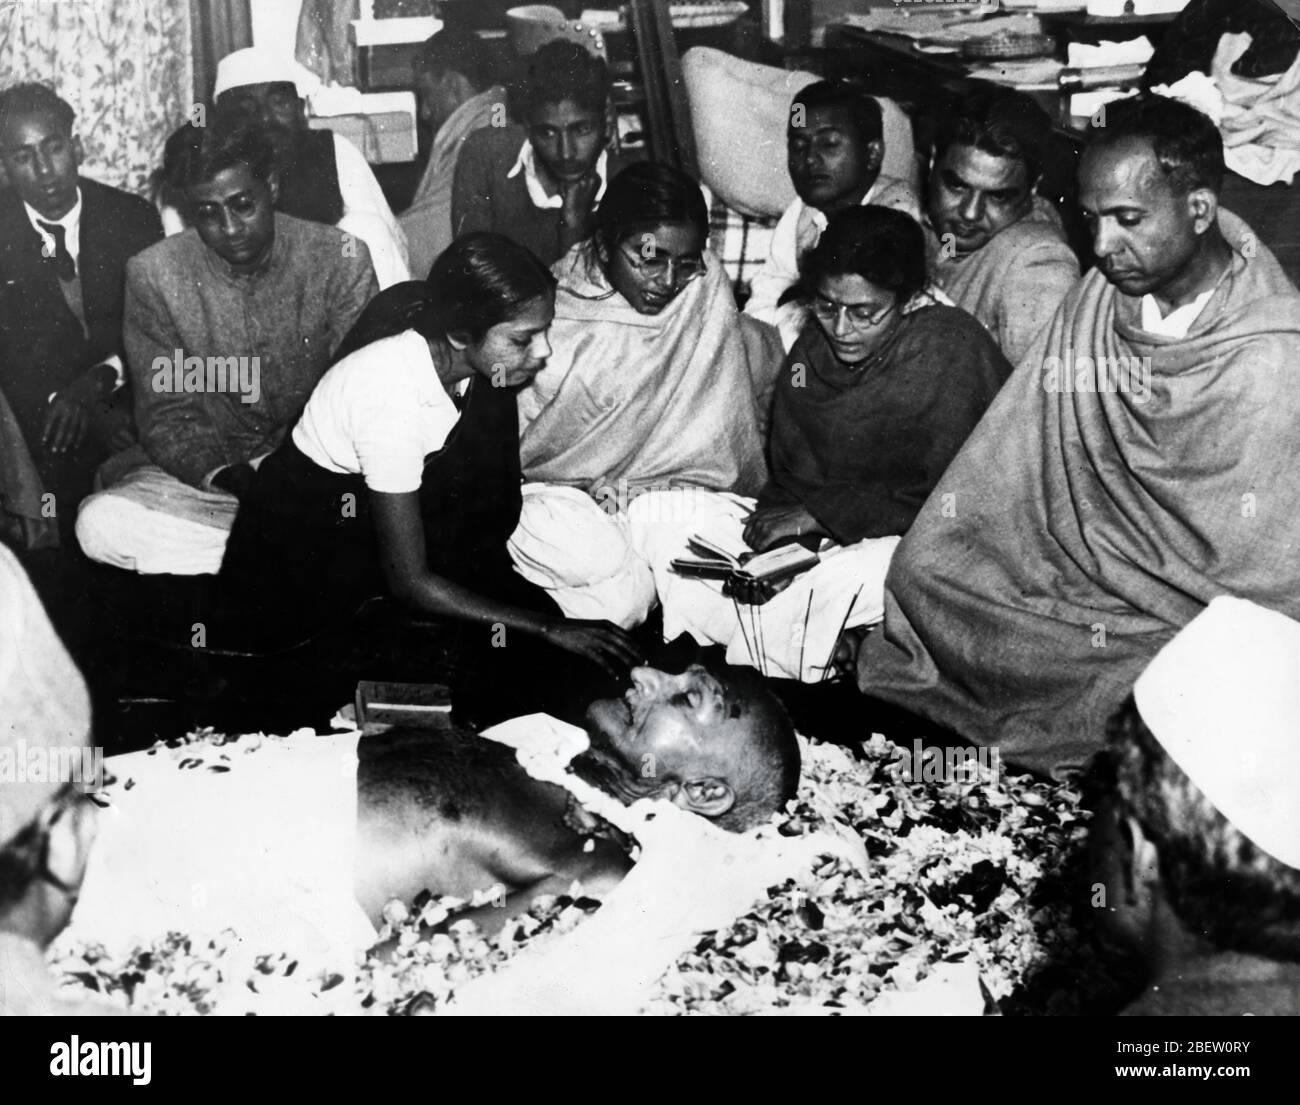 Mahatma Gandhi. Mohandas Karamchand Gandhi 2. Oktober 1869 – 30. Januar 1948 – war ein indischer Anwalt, antikolonialer Nationalist und politischer Ethiker, der gewaltfreien Widerstand einsetzte, um die erfolgreiche Kampagne für Indiens Unabhängigkeit von der britischen Herrschaft zu führen. Stockfoto